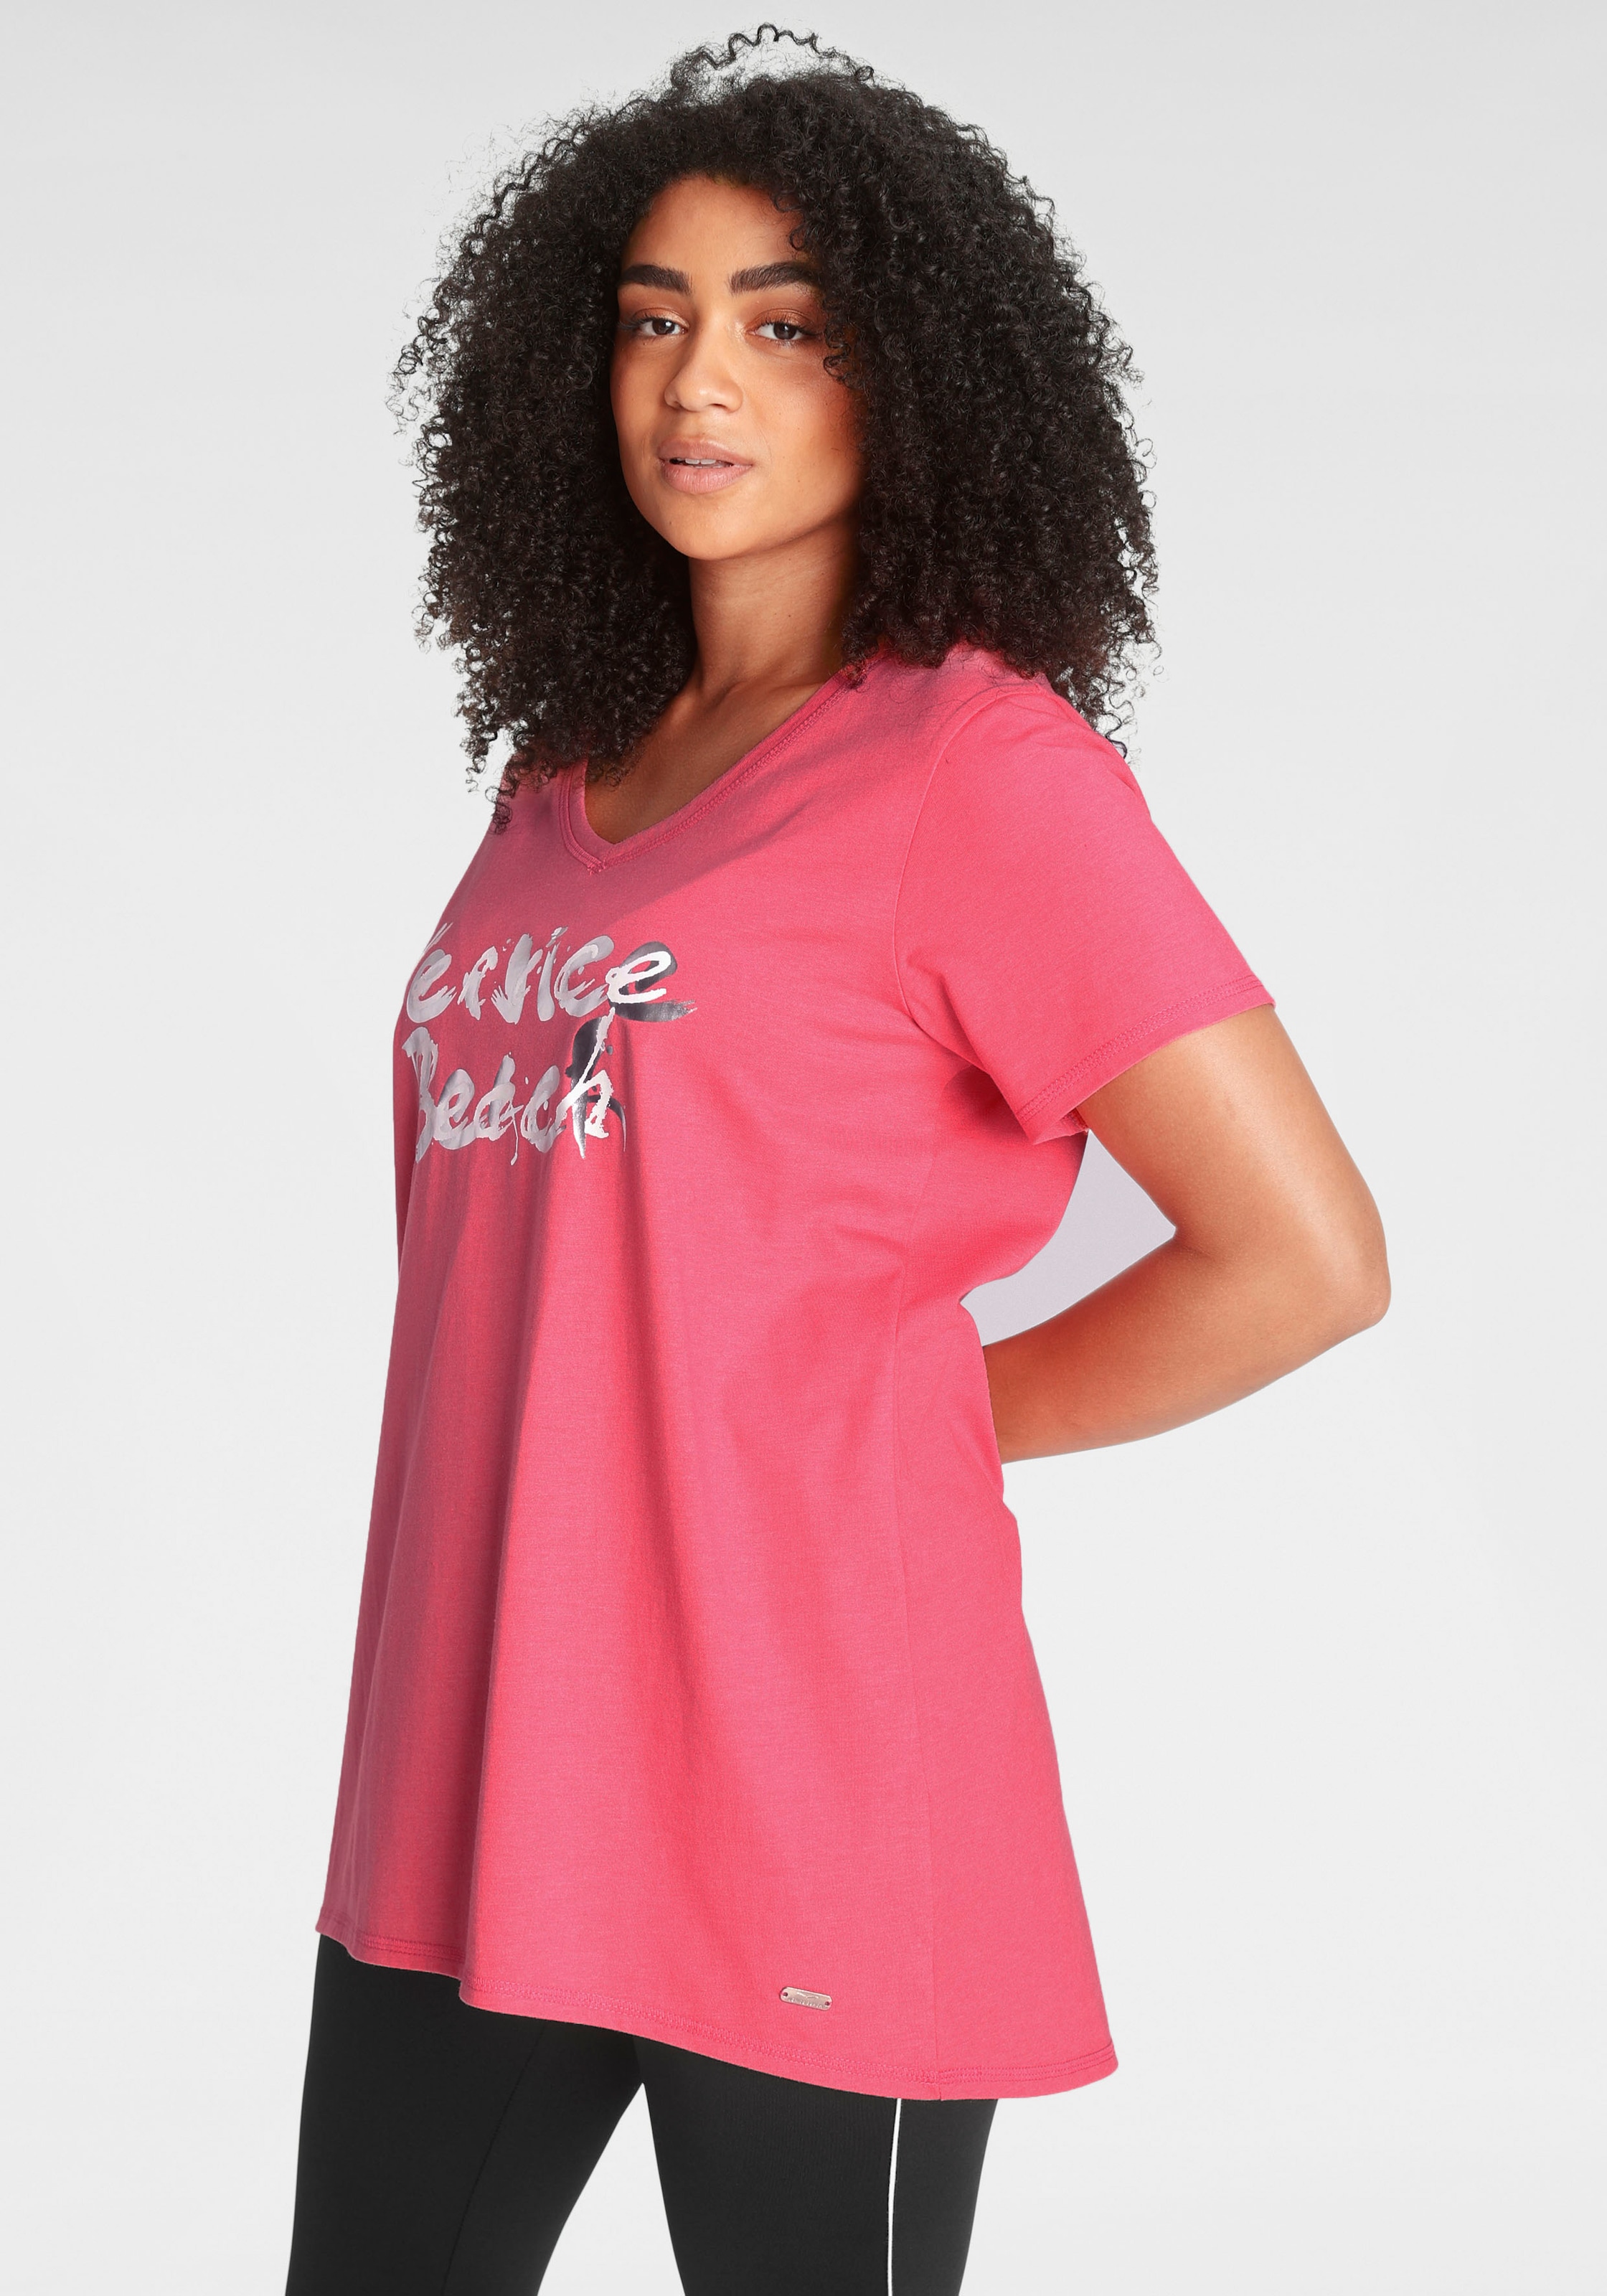 Venice Beach Longshirt, Große Größen kaufen im OTTO Online Shop